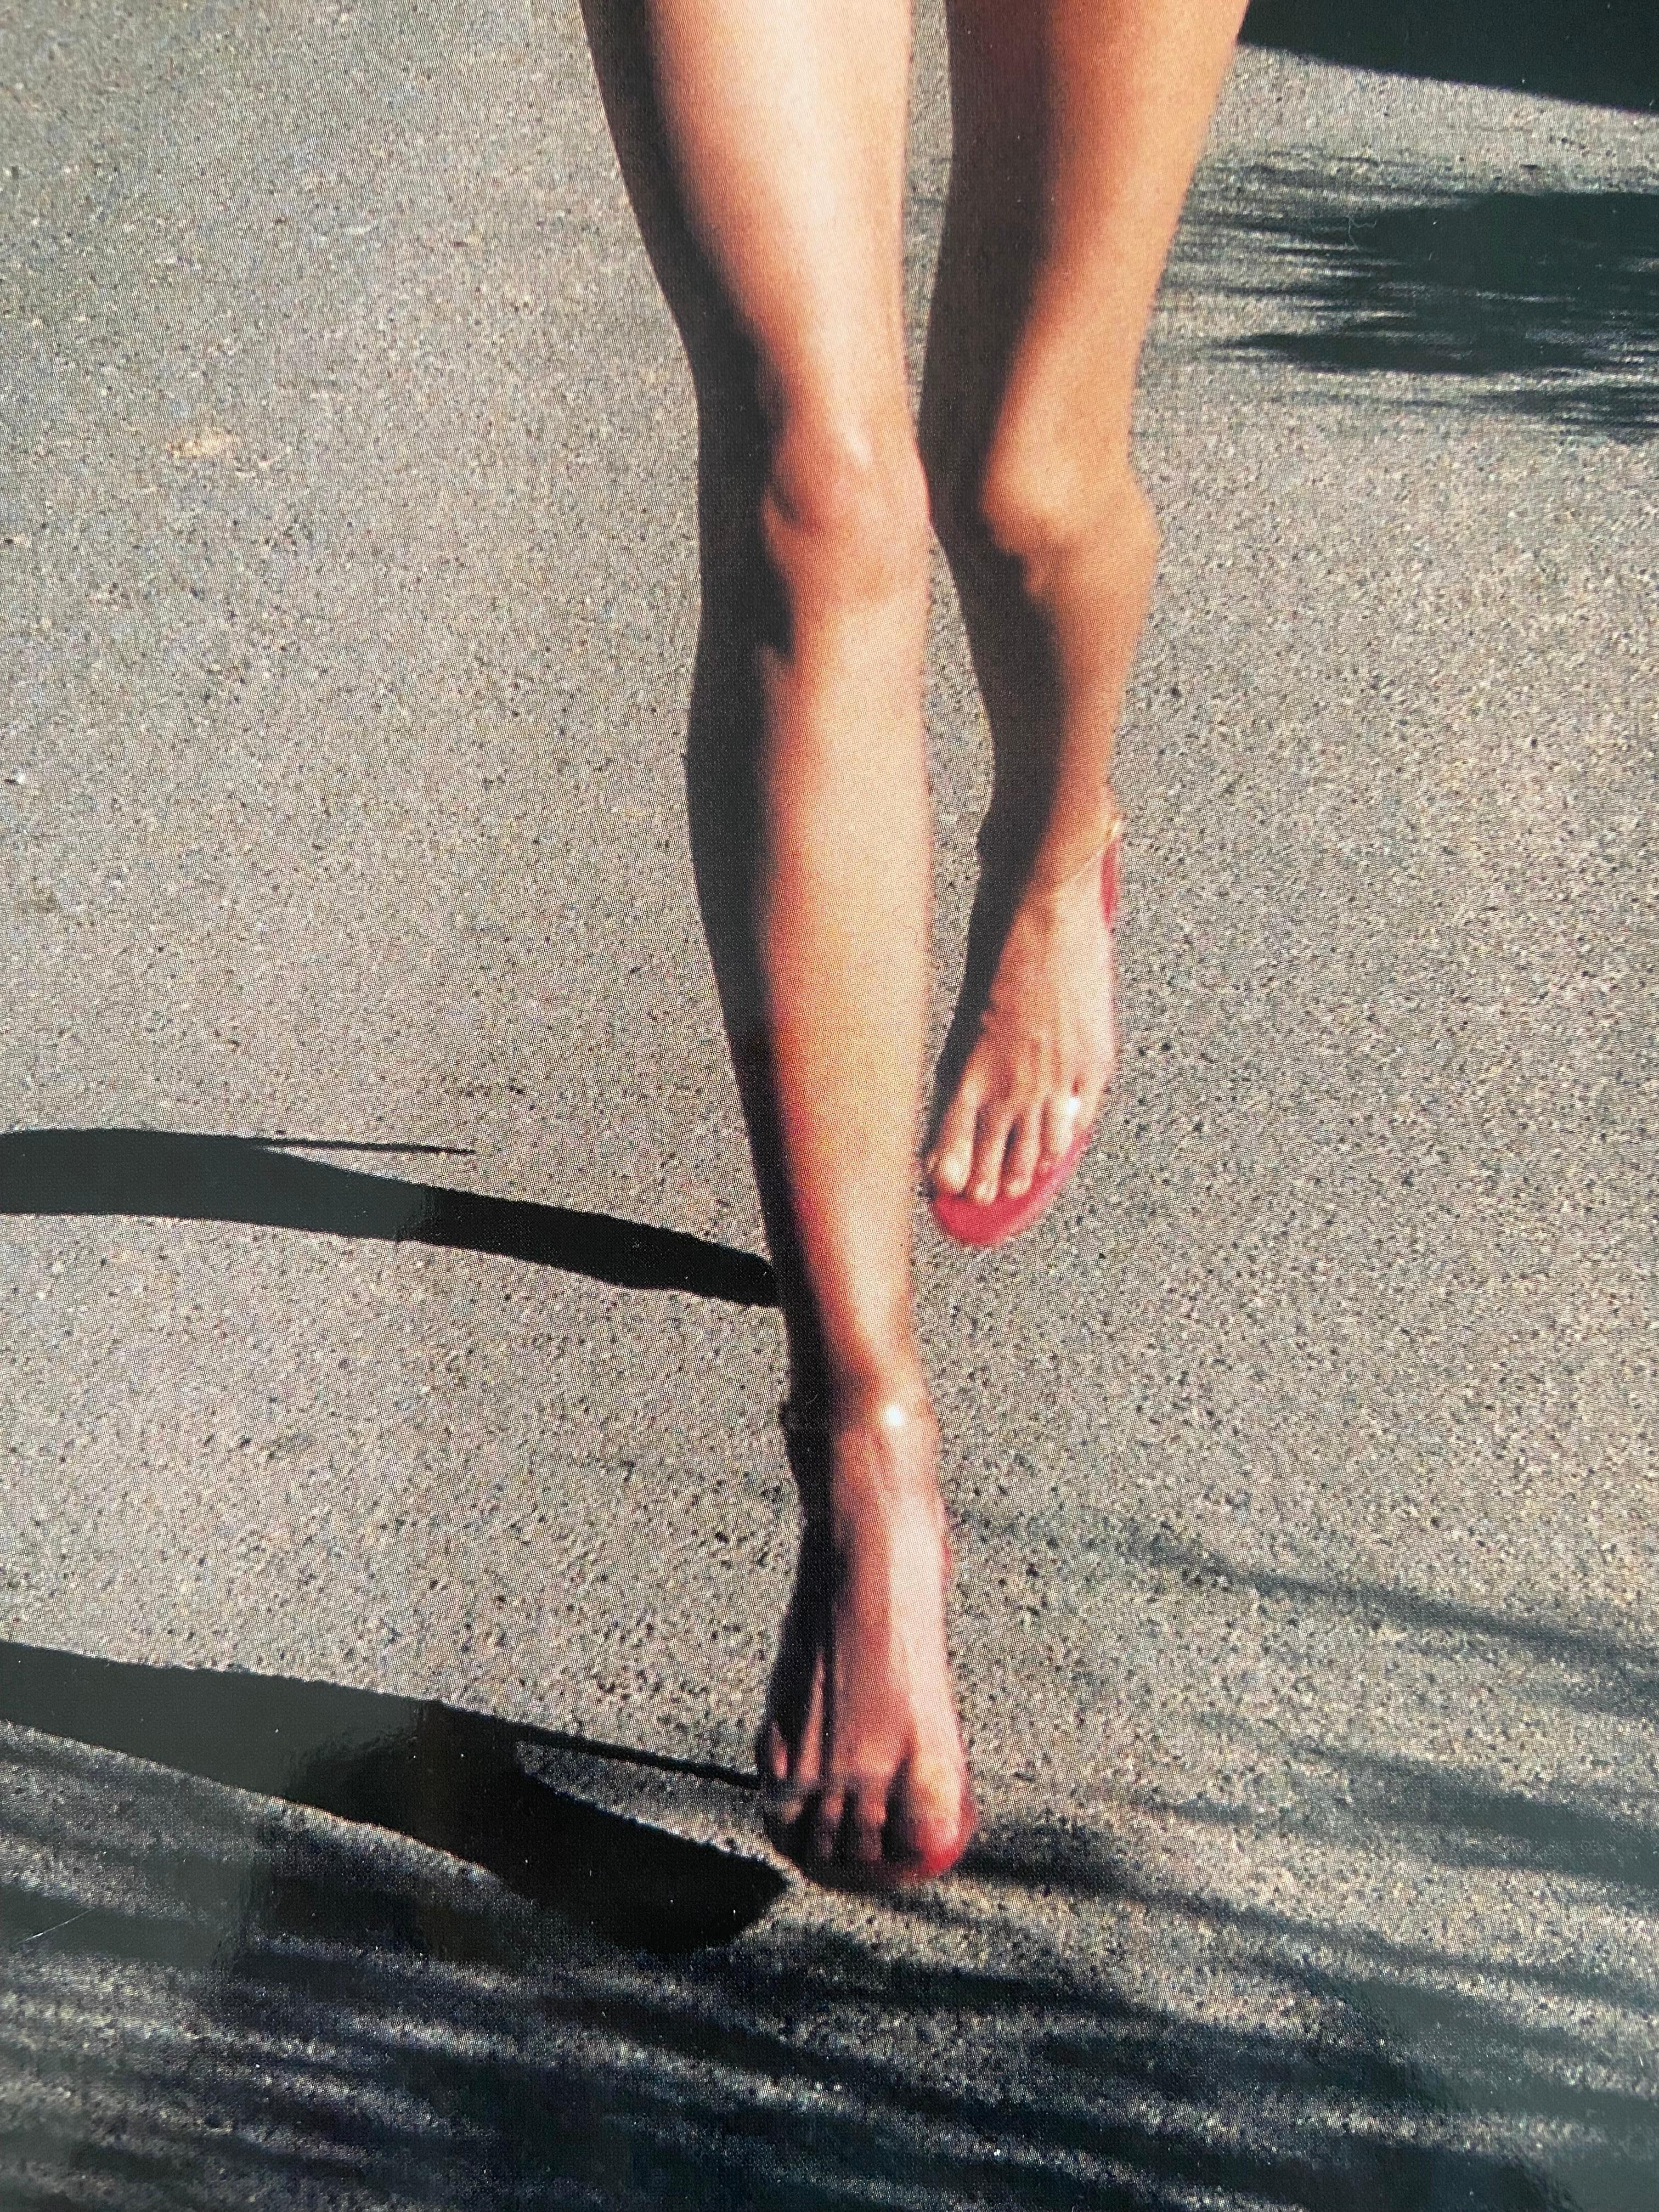 Originalfoto, limitiert zur Fotografie von Helmut Newton, gedruckt 2002 (Schweizerisch) im Angebot